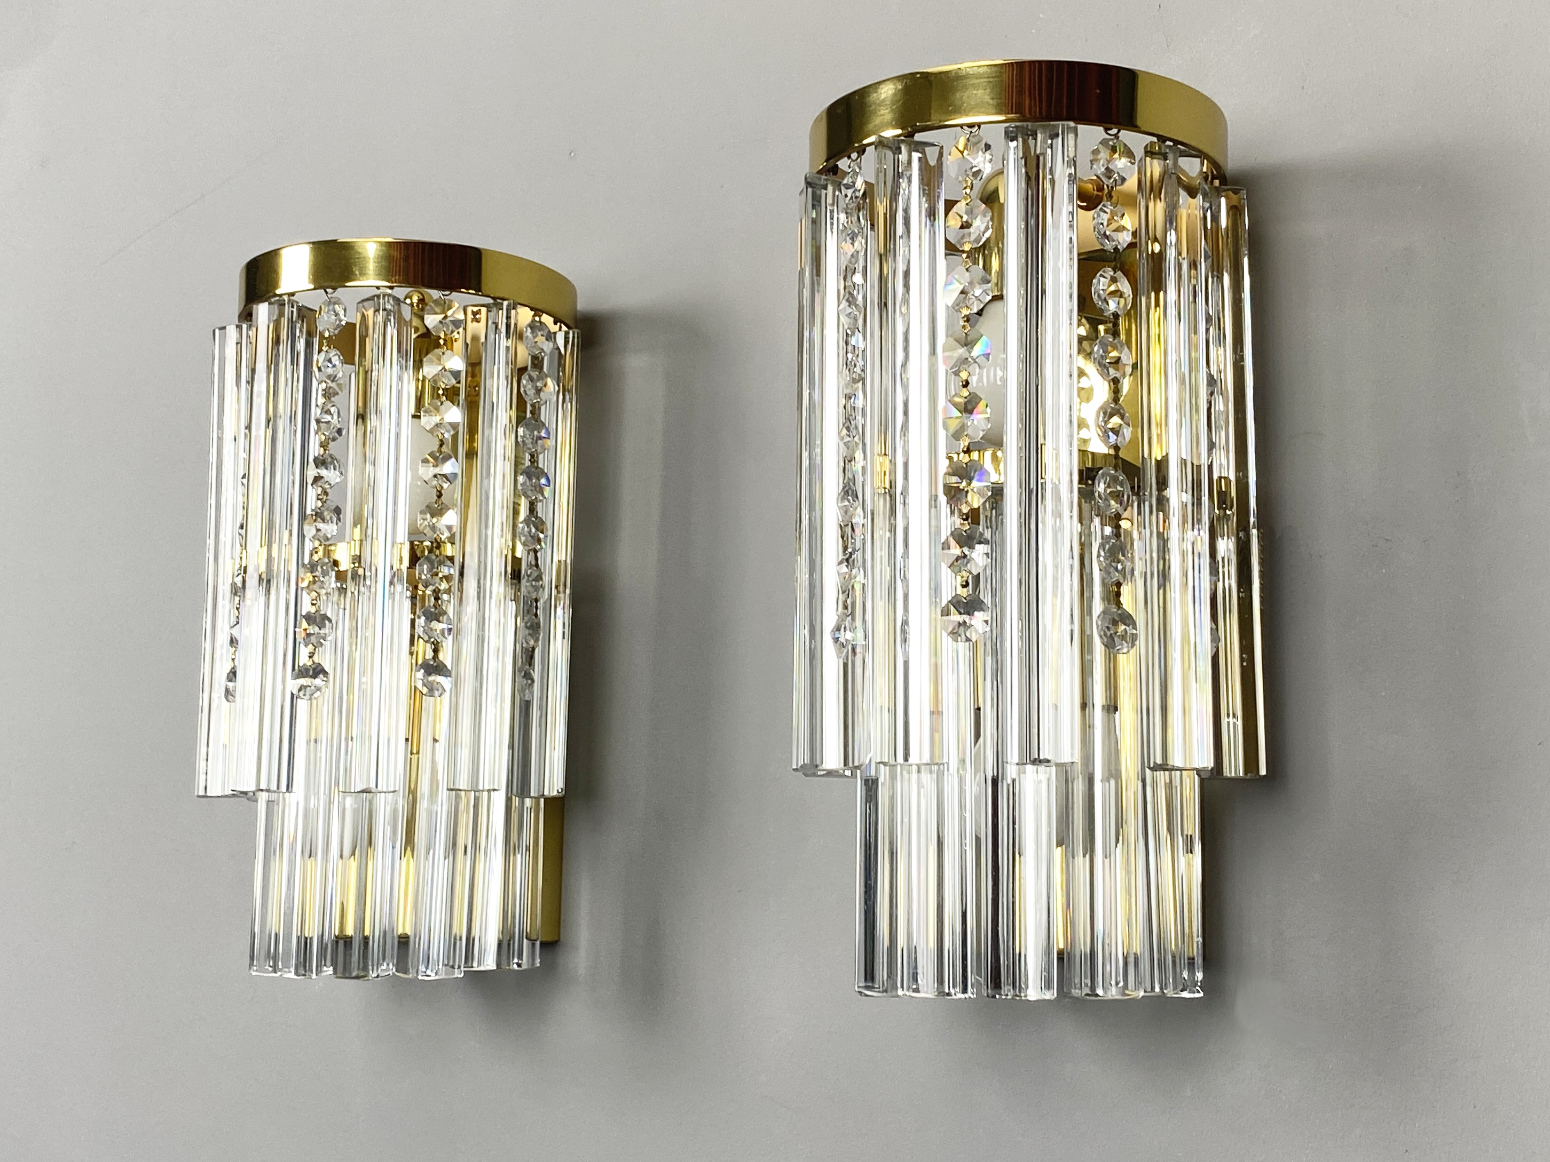 Paar Wandlampen von J.T. Kalmar Wien mit  Murano Kristall Glas Behang, Österreich, 1970er. Jede Wandlampe hat 22 Kristall Teile.